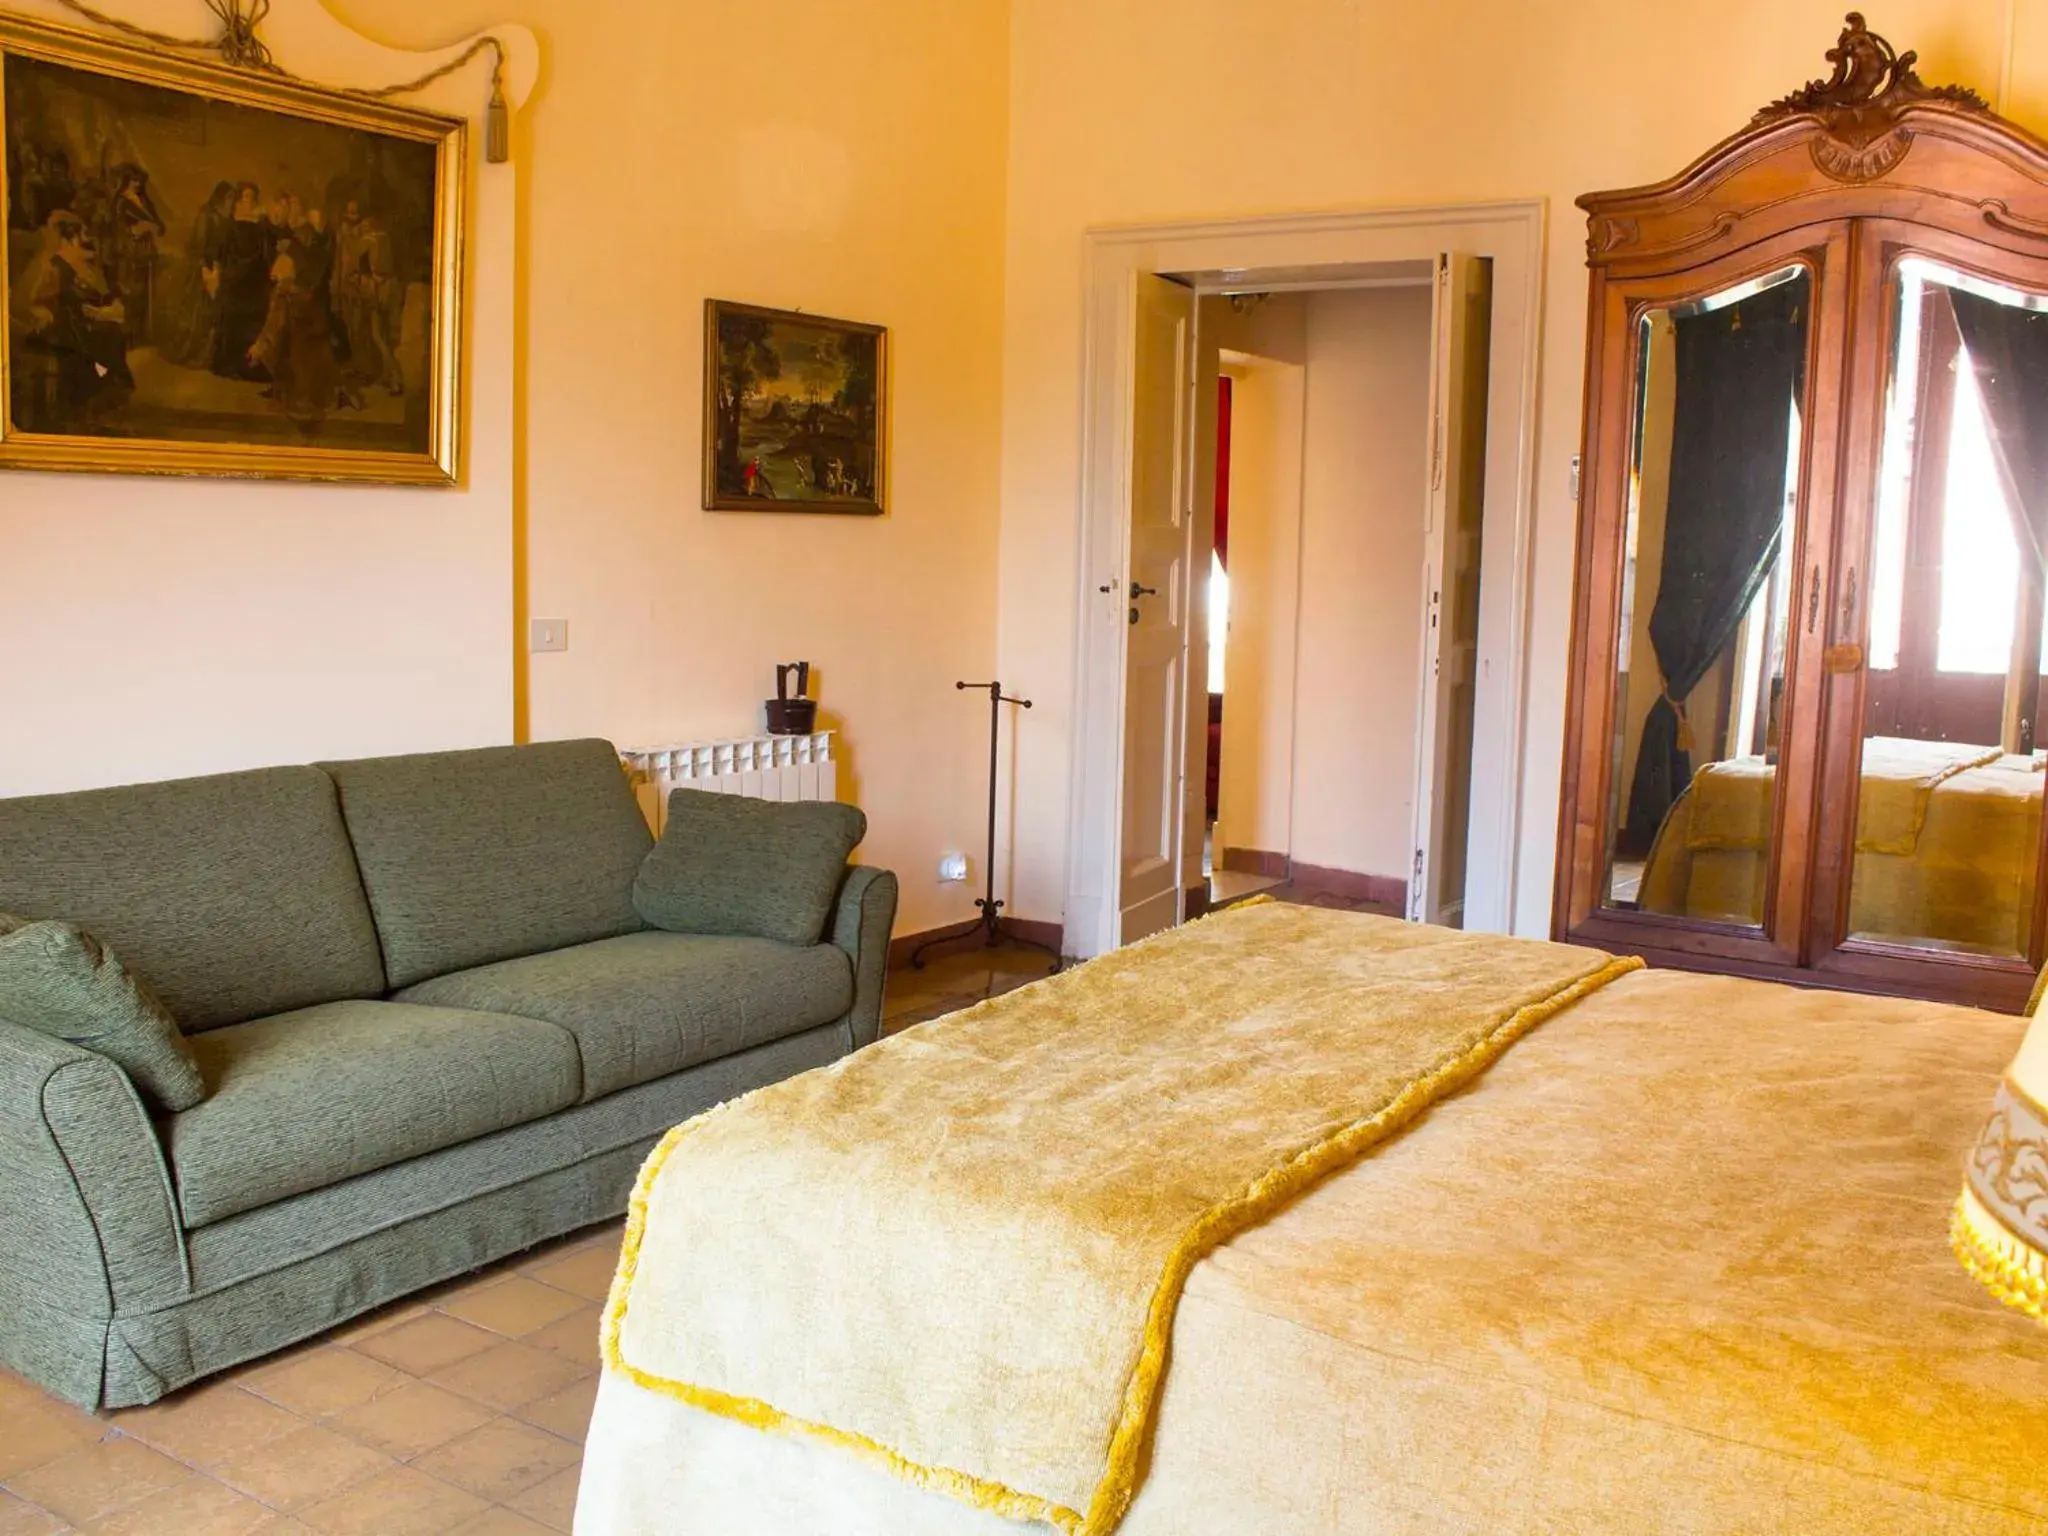 Bedroom, Bed in Principe Di Francalanza